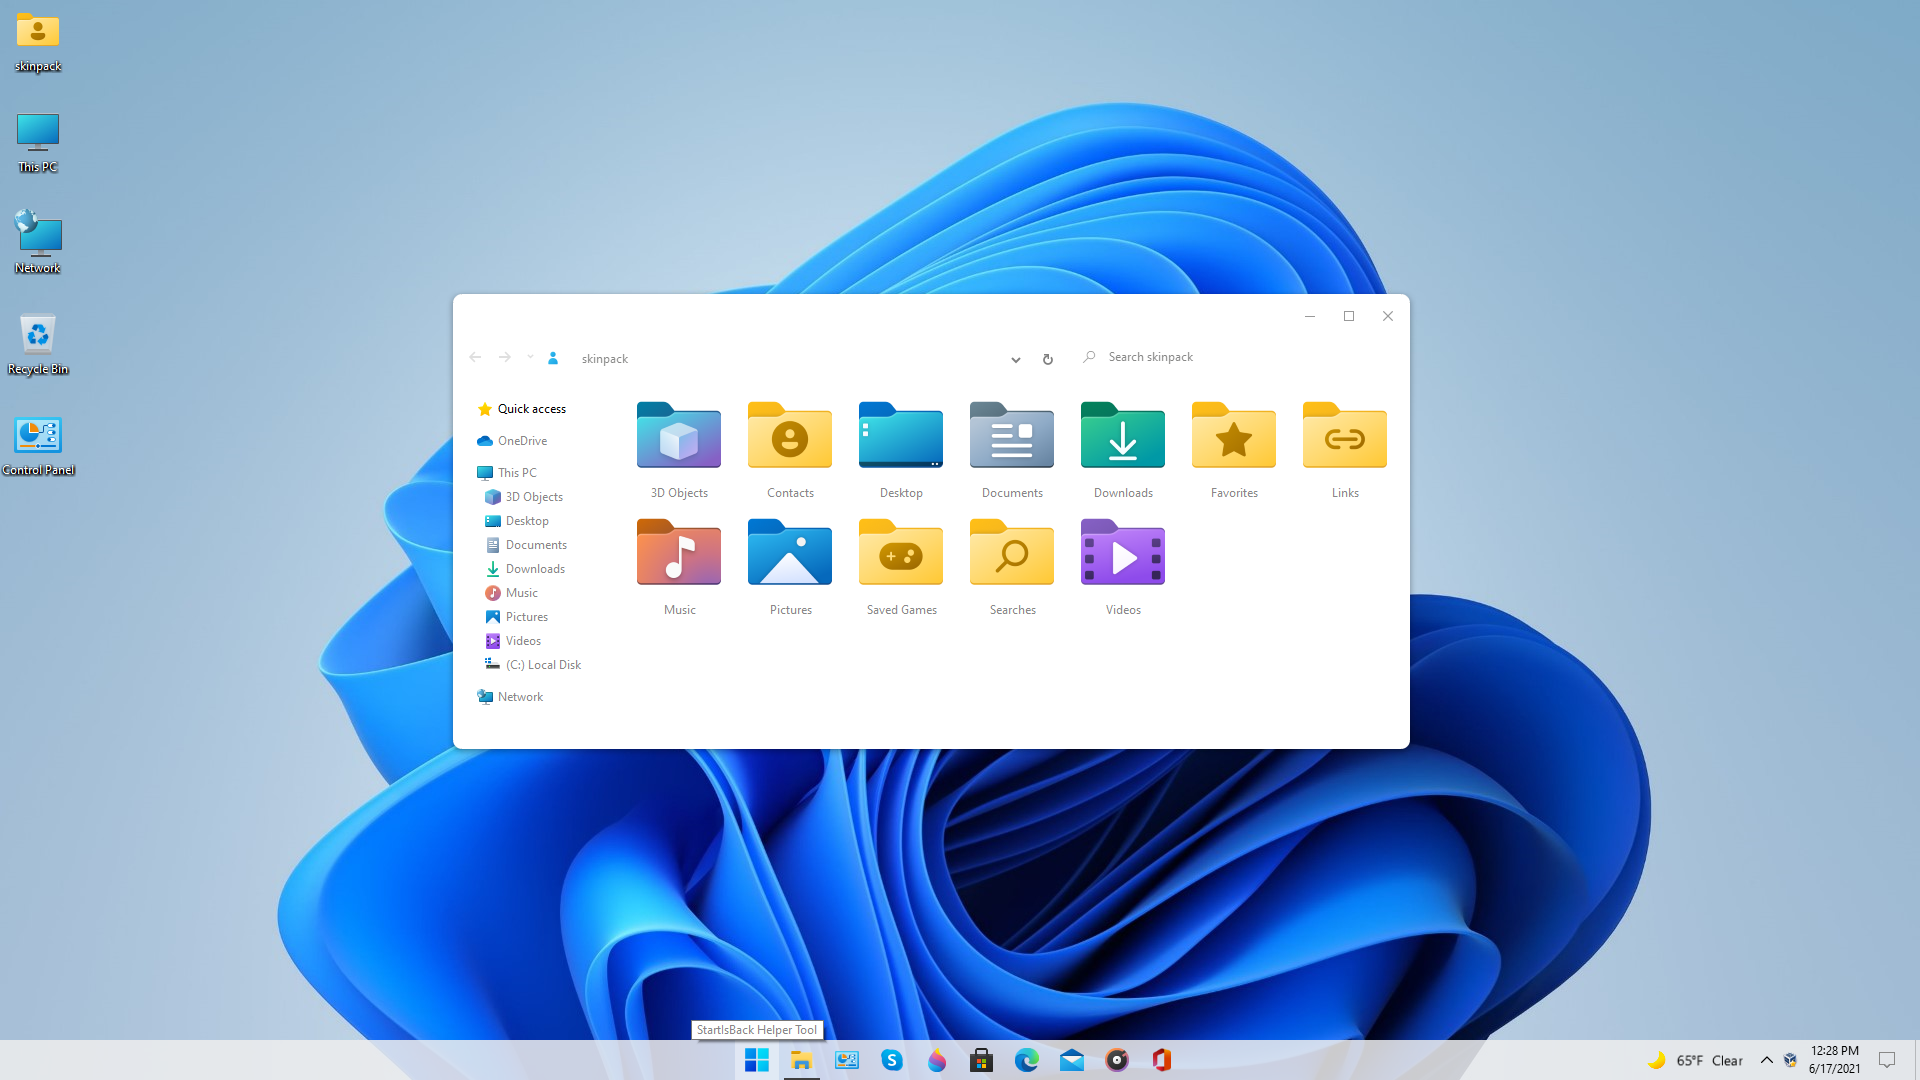 Thay đổi hình nền của bạn với hình nền Windows 11 độc đáo và tuyệt đẹp. Chúng tôi cung cấp nhiều loại hình nền cho Windows 11 với độ phân giải cao để bạn có thể tải xuống miễn phí. Hãy tải ngay và trang trí cho máy tính của bạn thêm phần sinh động.